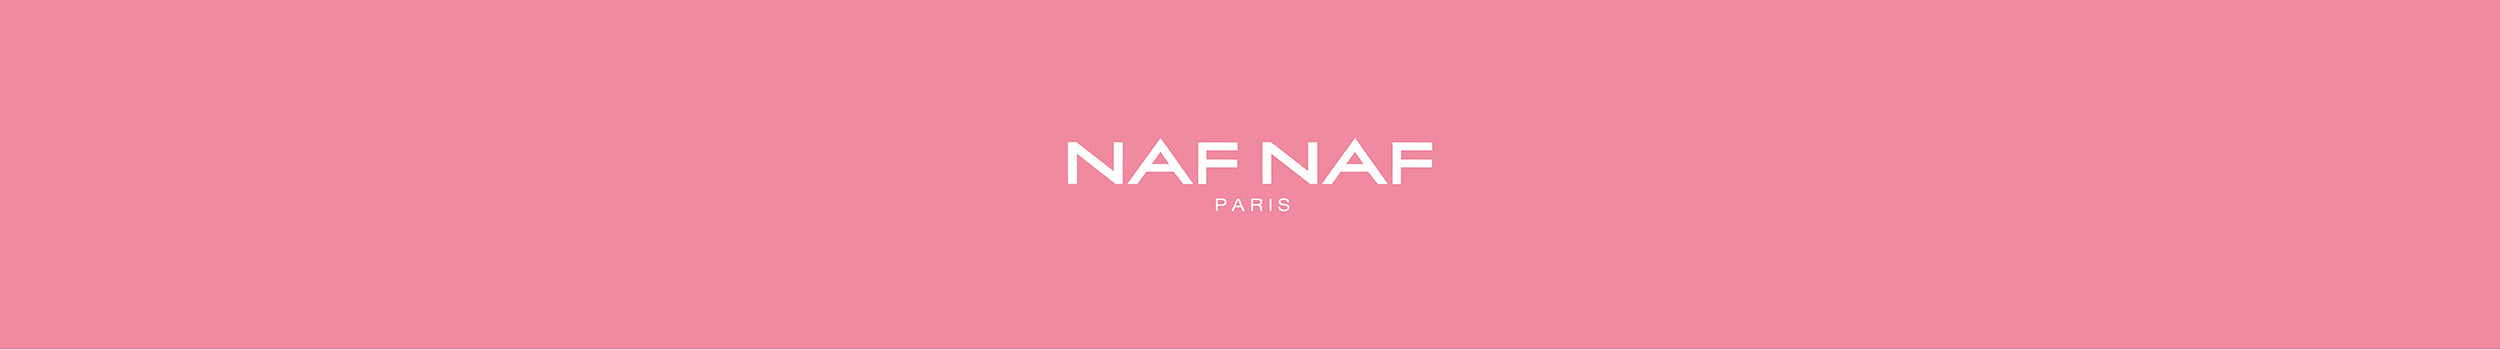 Naf Naf Eyewear